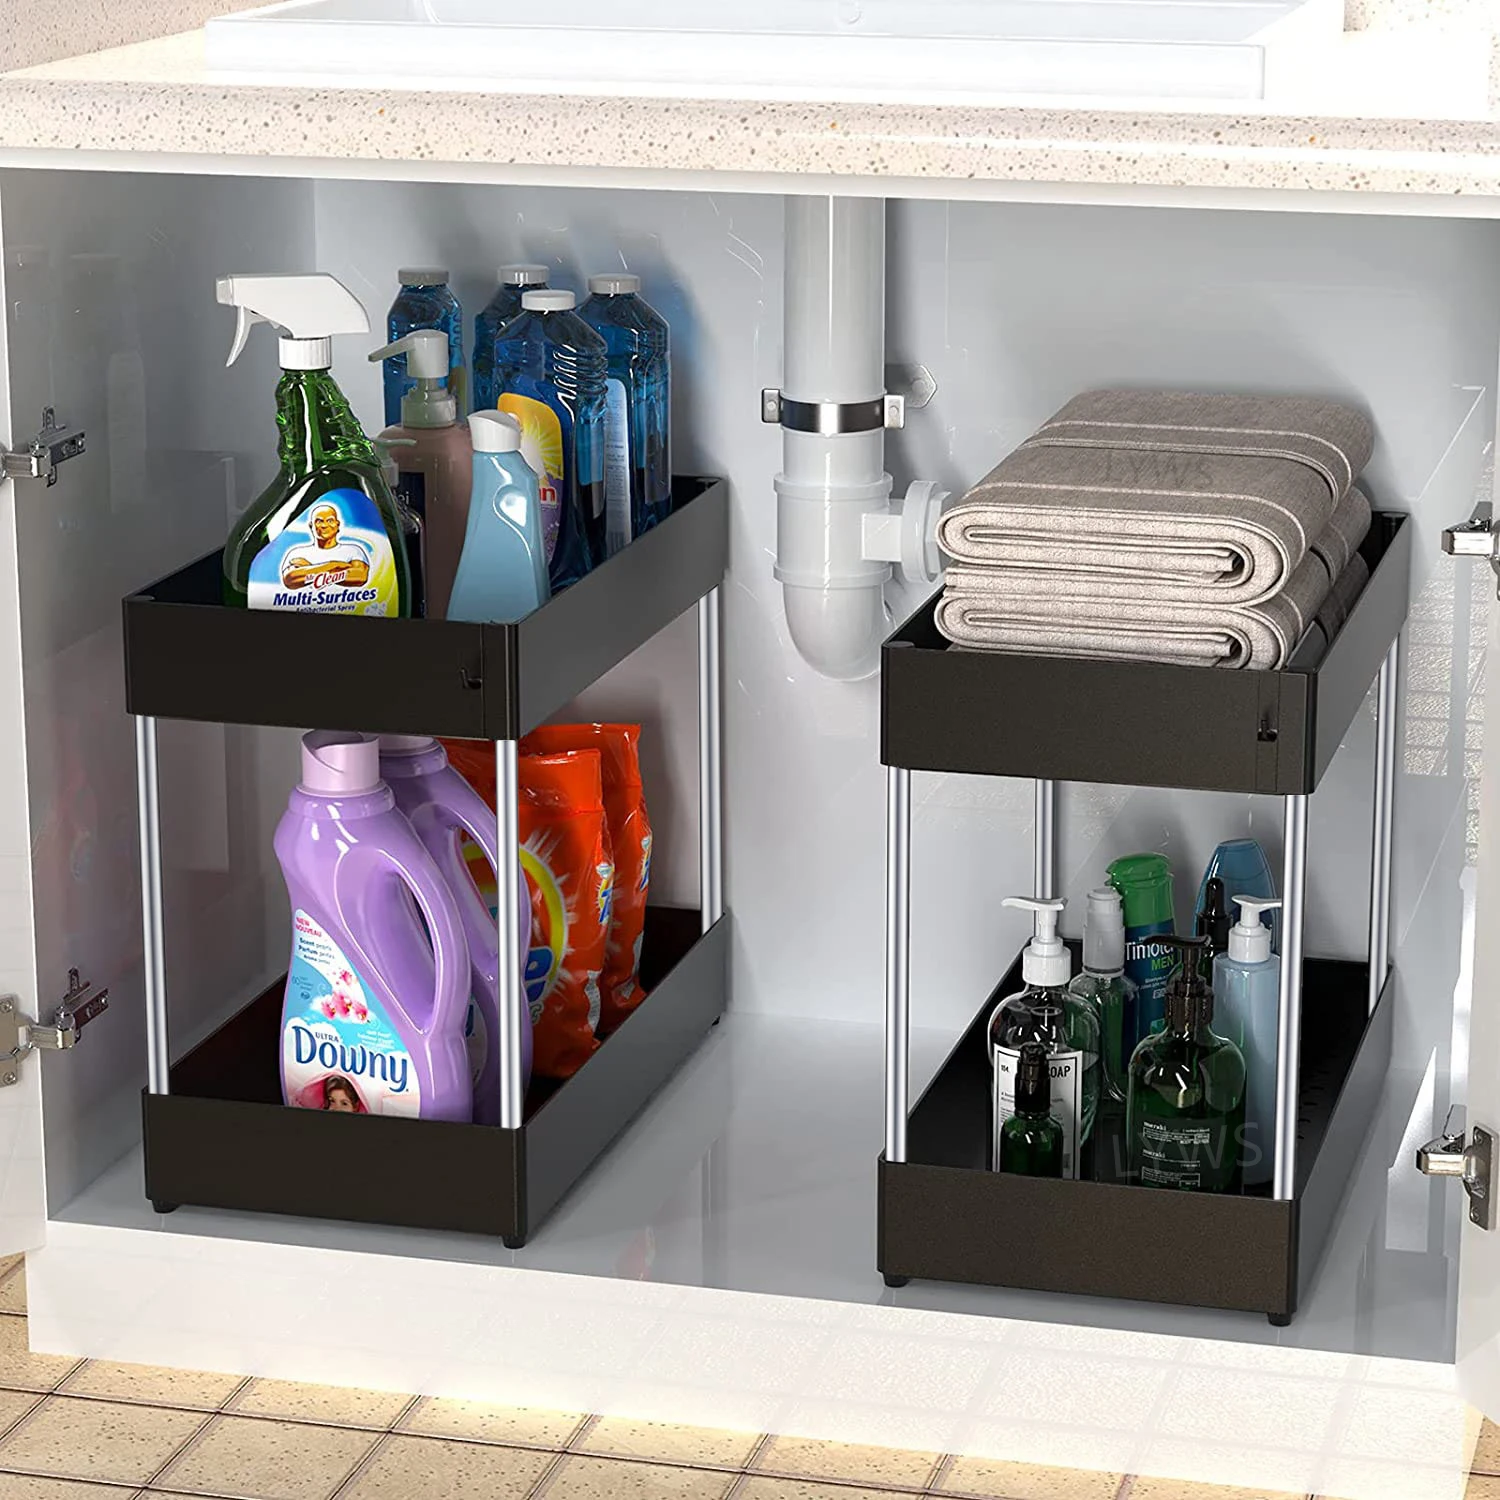 https://ae01.alicdn.com/kf/S8f9fce0386034c8ba45d199d167ce36bp/Under-Bathroom-Sink-Storage-2-Tier-Drawer-Organizer-Bath-Collection-Sliding-Baskets-Under-Sink-Cabinet-Storage.jpg